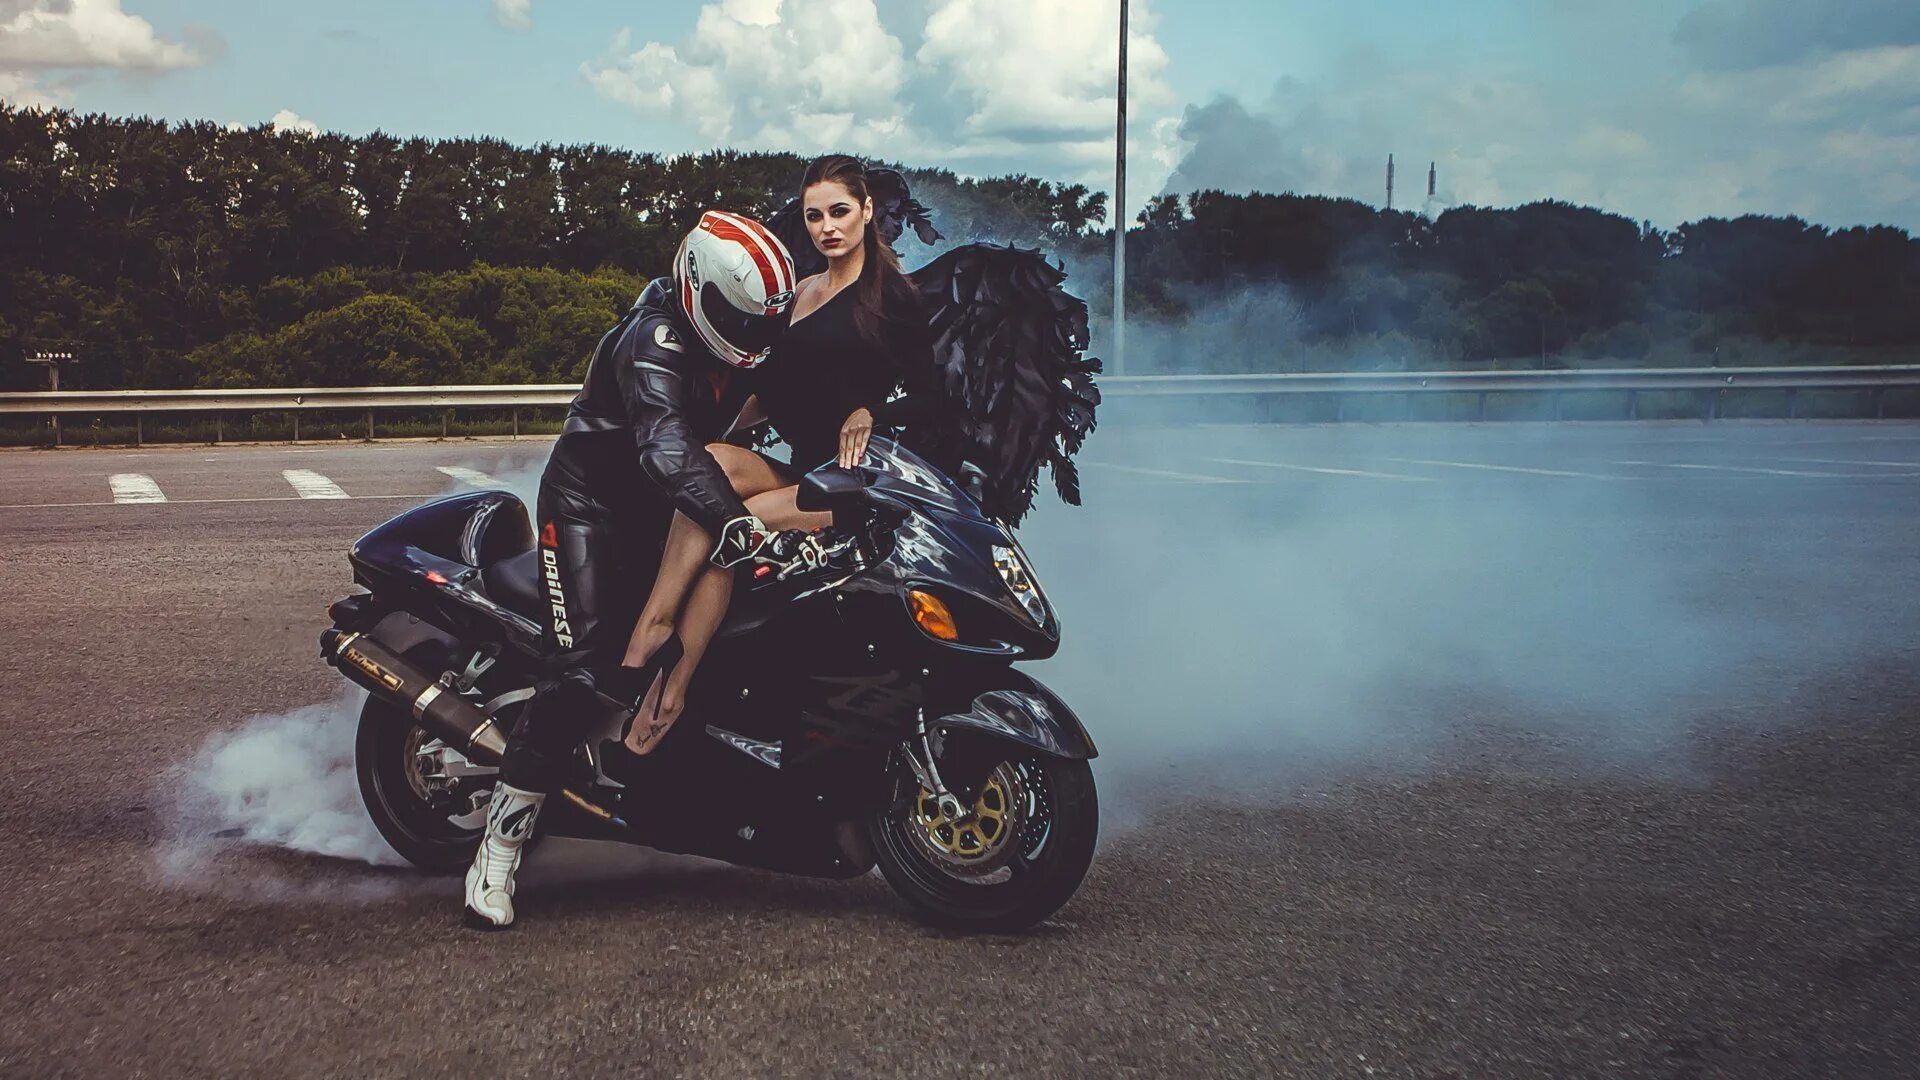 Девушка на мотоцикле. Парень на мотоцикле. Мотоциклист с девушкой. Парень с девушкой на мотоцикле. Фото на байке